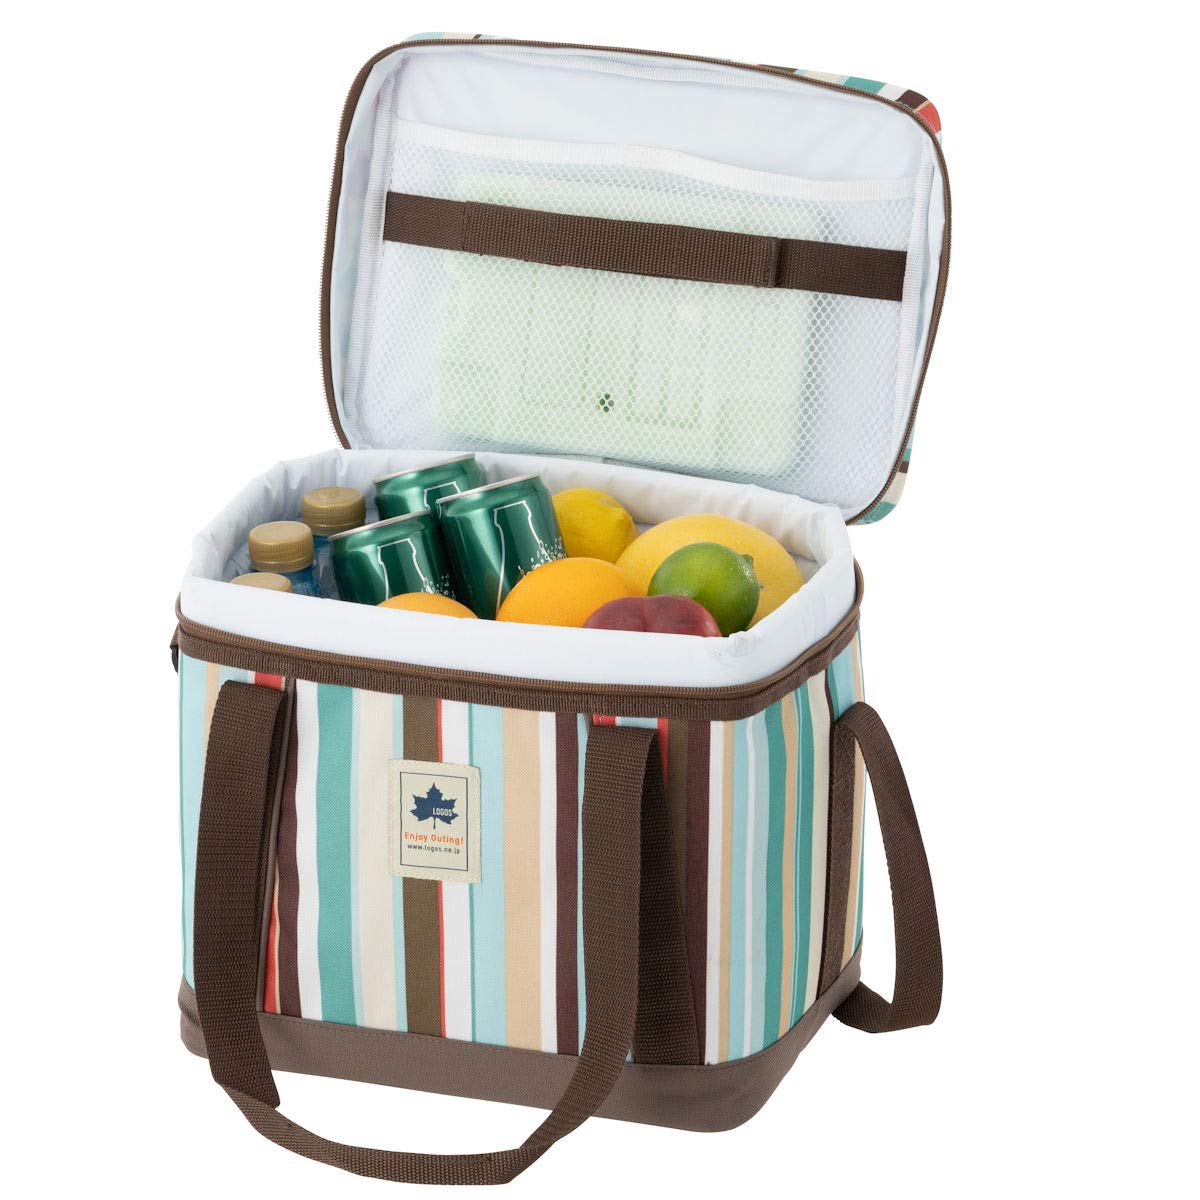 食べ物を持ち運べる保冷バッグ・ピクニックバスケット